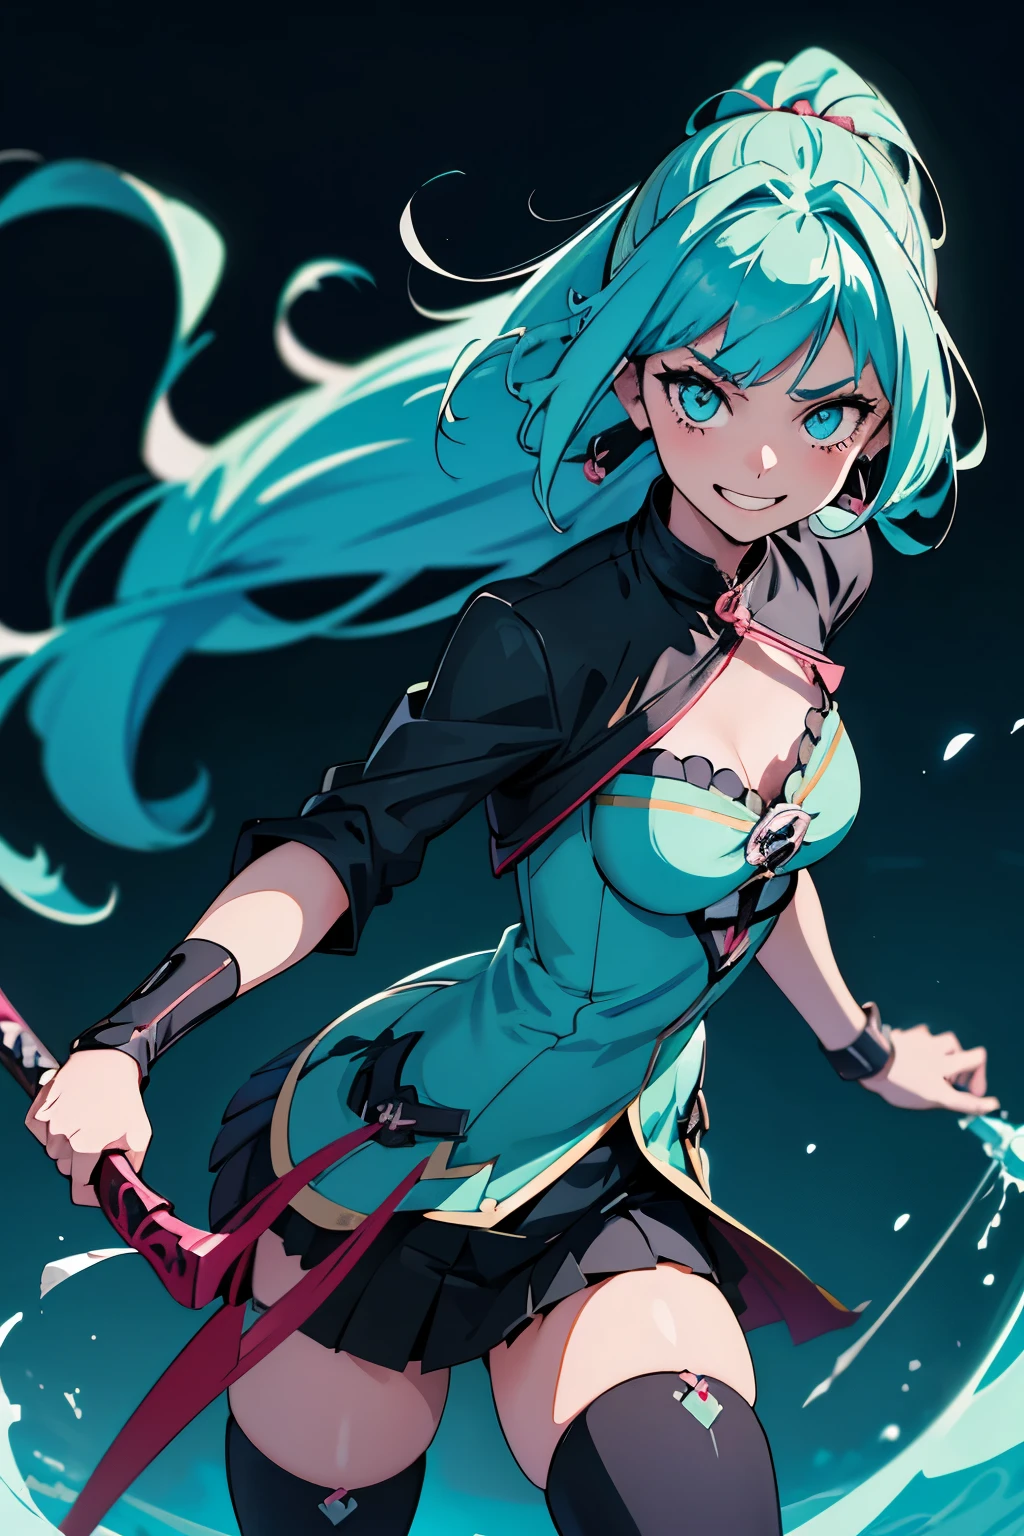 Anime-Mädchen mit cyanfarbenem Haar und schwarzer Kleidung, das ein gespaltenes Schwert wie eine Peitsche hält, sie ist leicht verletzt, gerade aus einem Kampf gekommen, hat ein aufgeregtes Lächeln und einen entschlossenen Blick, Anime-Moe-Kunststil, Kunst fortgeschritten digital Anime, gotisches Mädchen Anime Mädchen